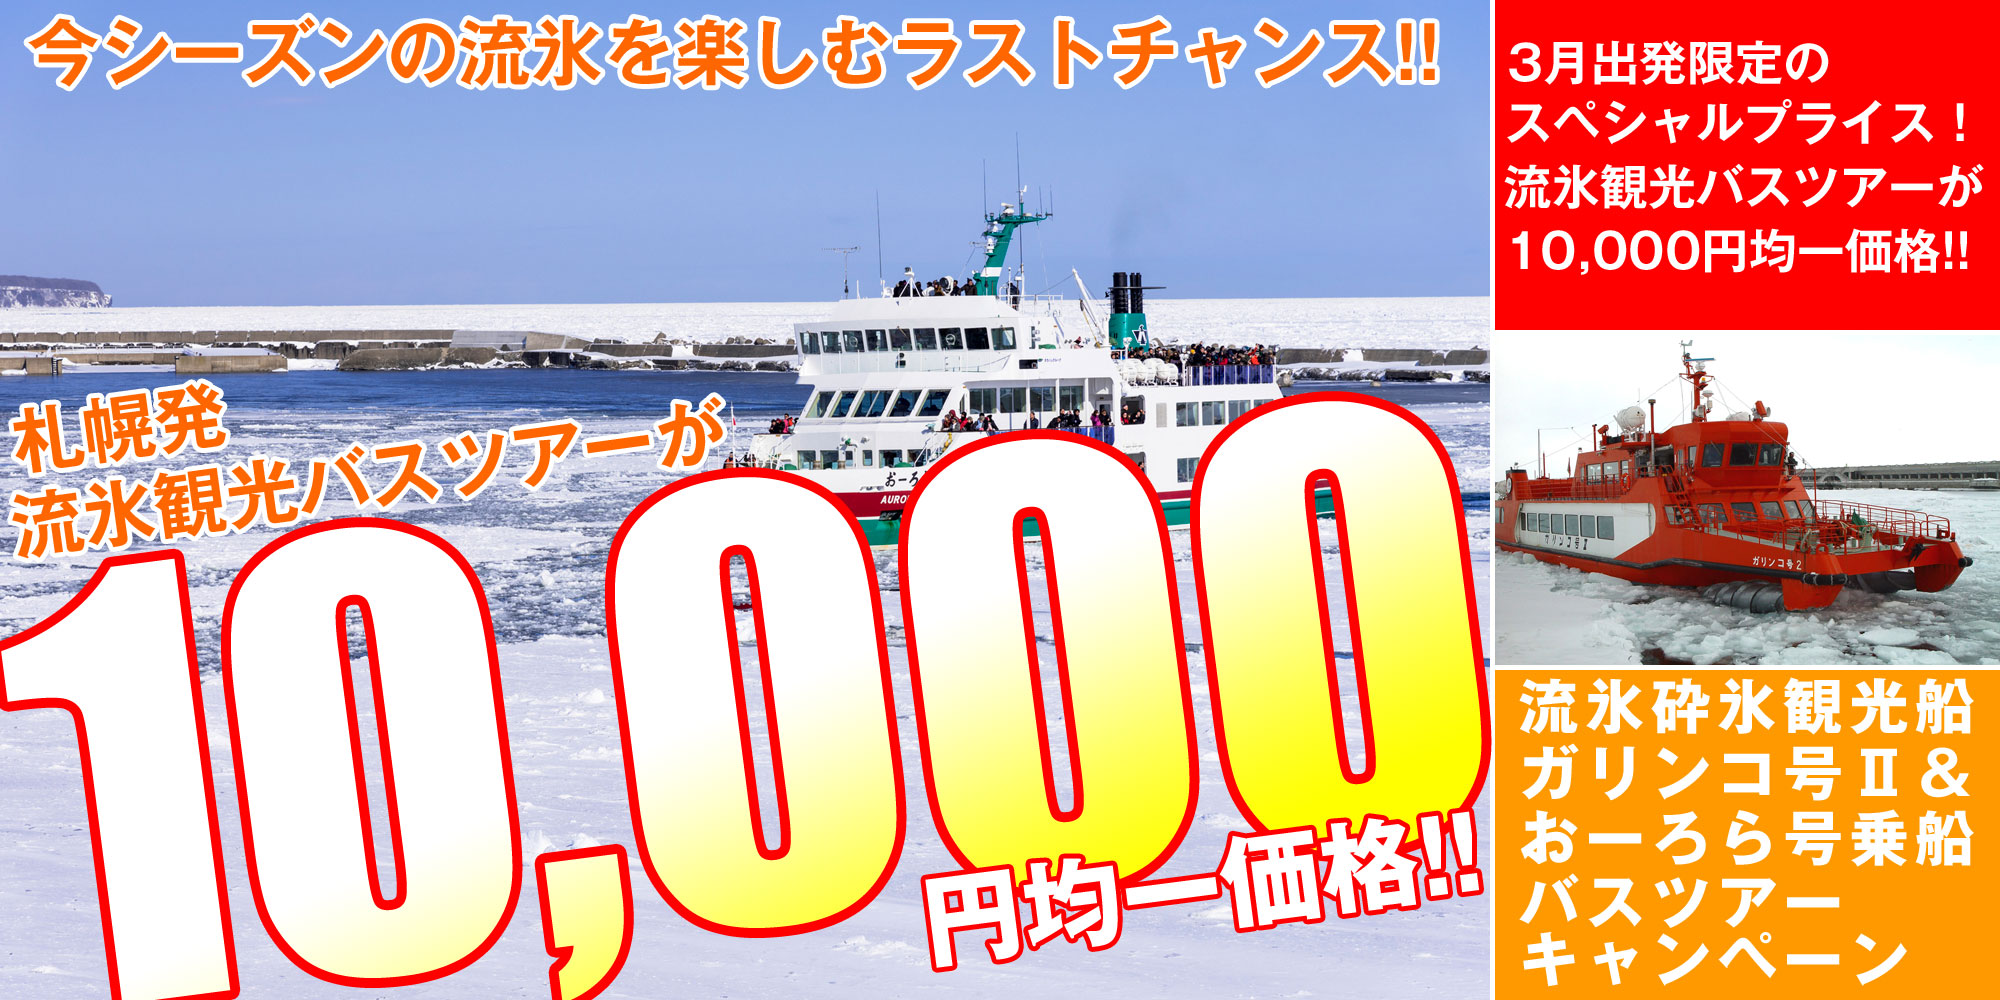 流氷砕氷船乗船日帰りバスツアー10,000円均一セール